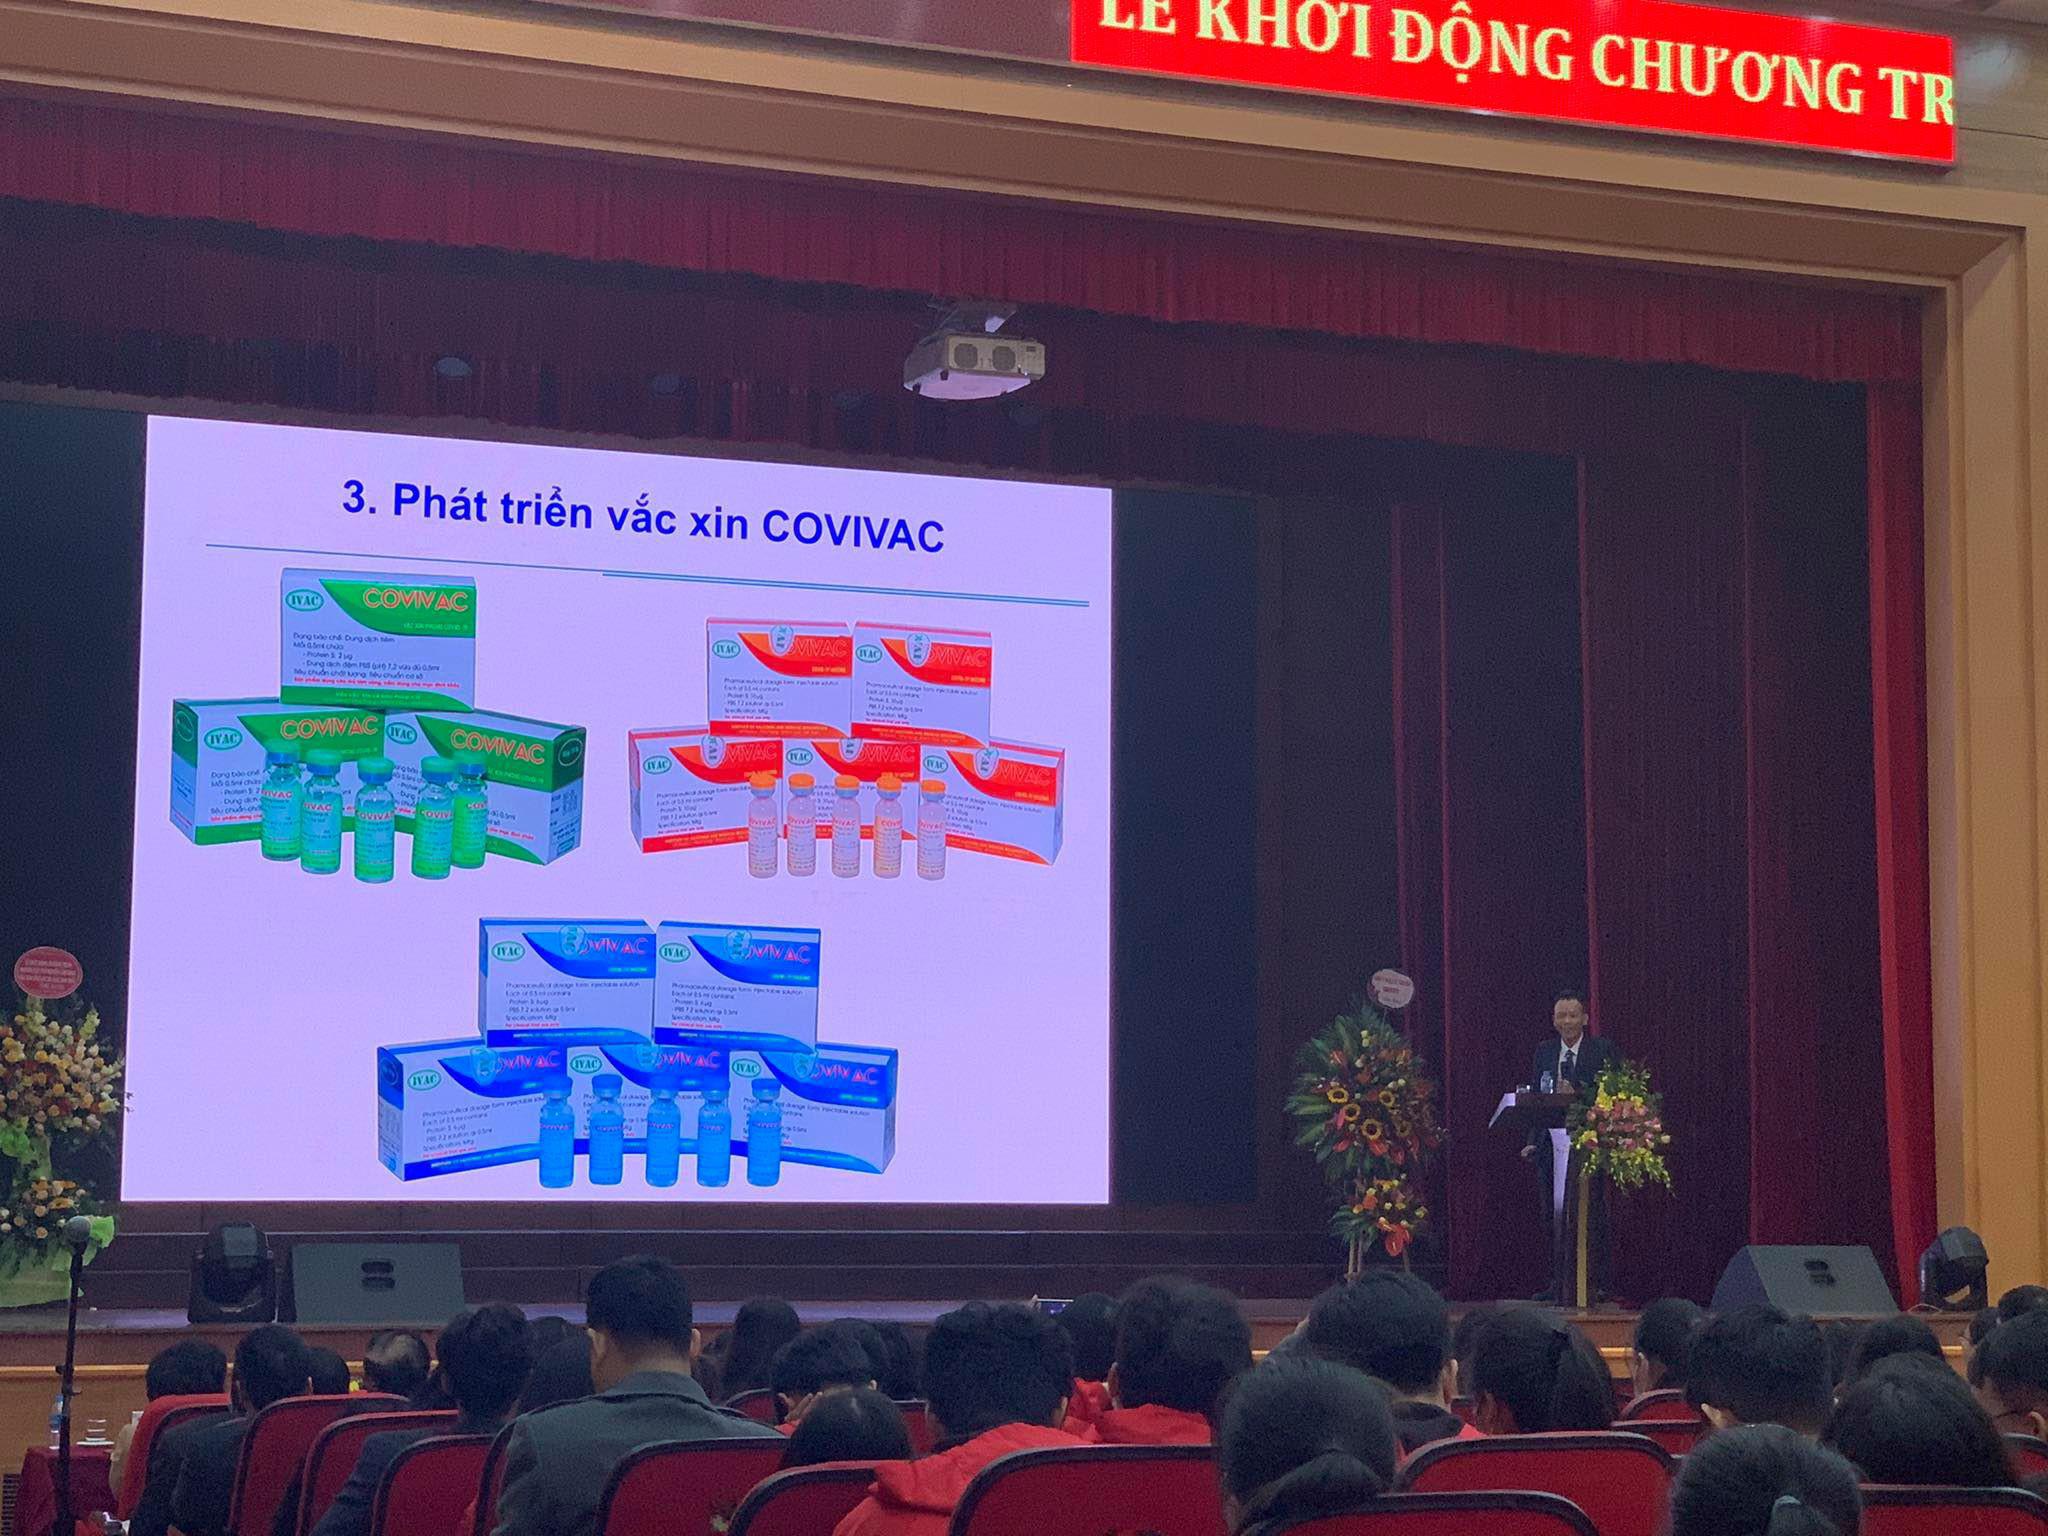 Vaccine phòng Covid-19 thứ 2 của Việt Nam được phát triển trên biến chủng mới của SARS-CoV-2 - 2